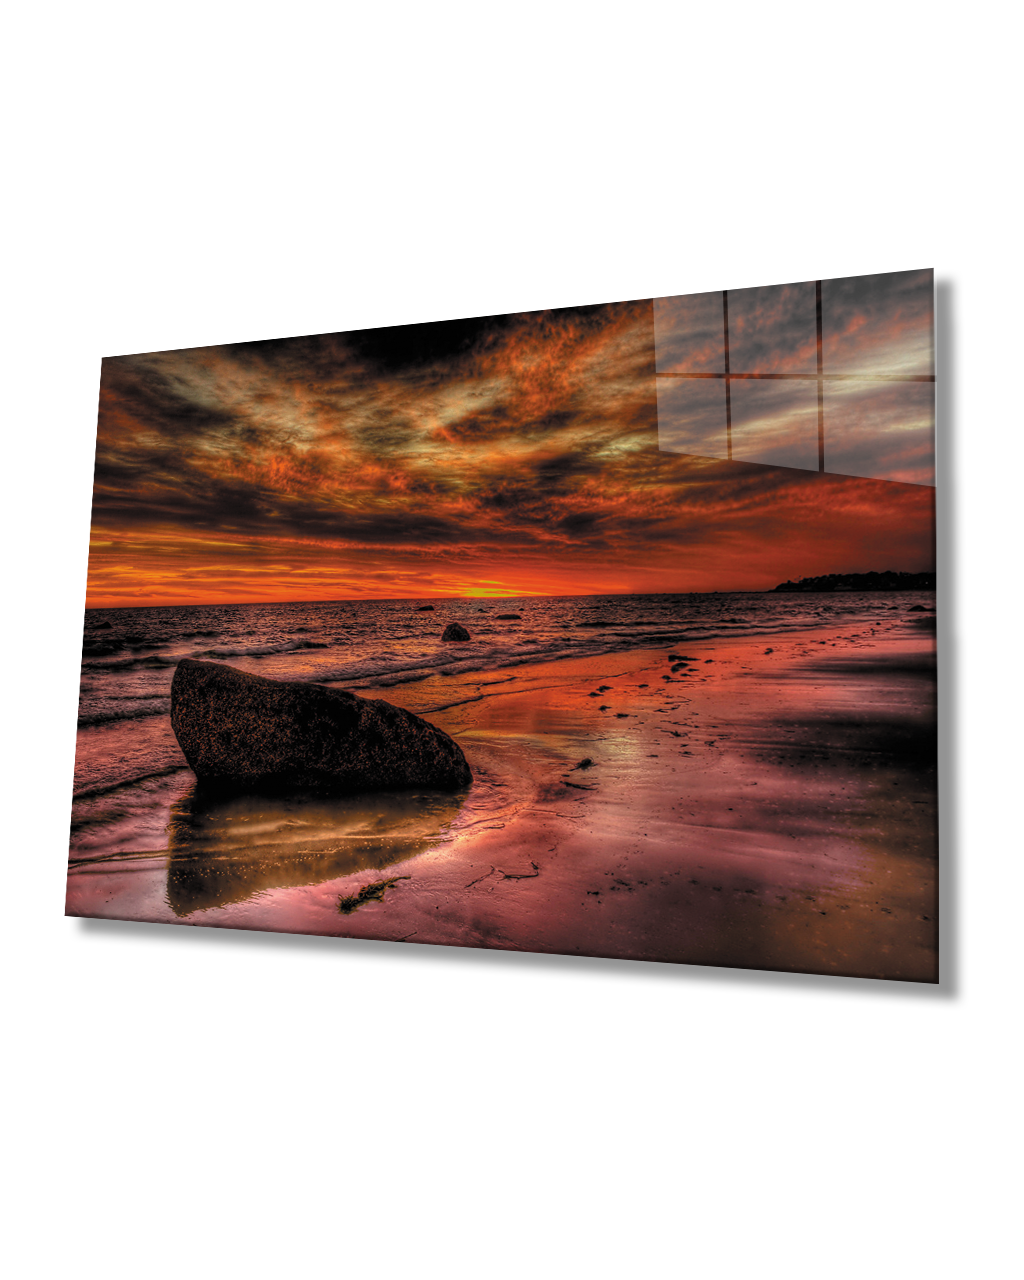 Gün Batımı Deniz  Taş Cam Tablo  4mm Dayanıklı Temperli Cam Sunset Sea Stone Glass Table 4mm Durable Tempered Glass